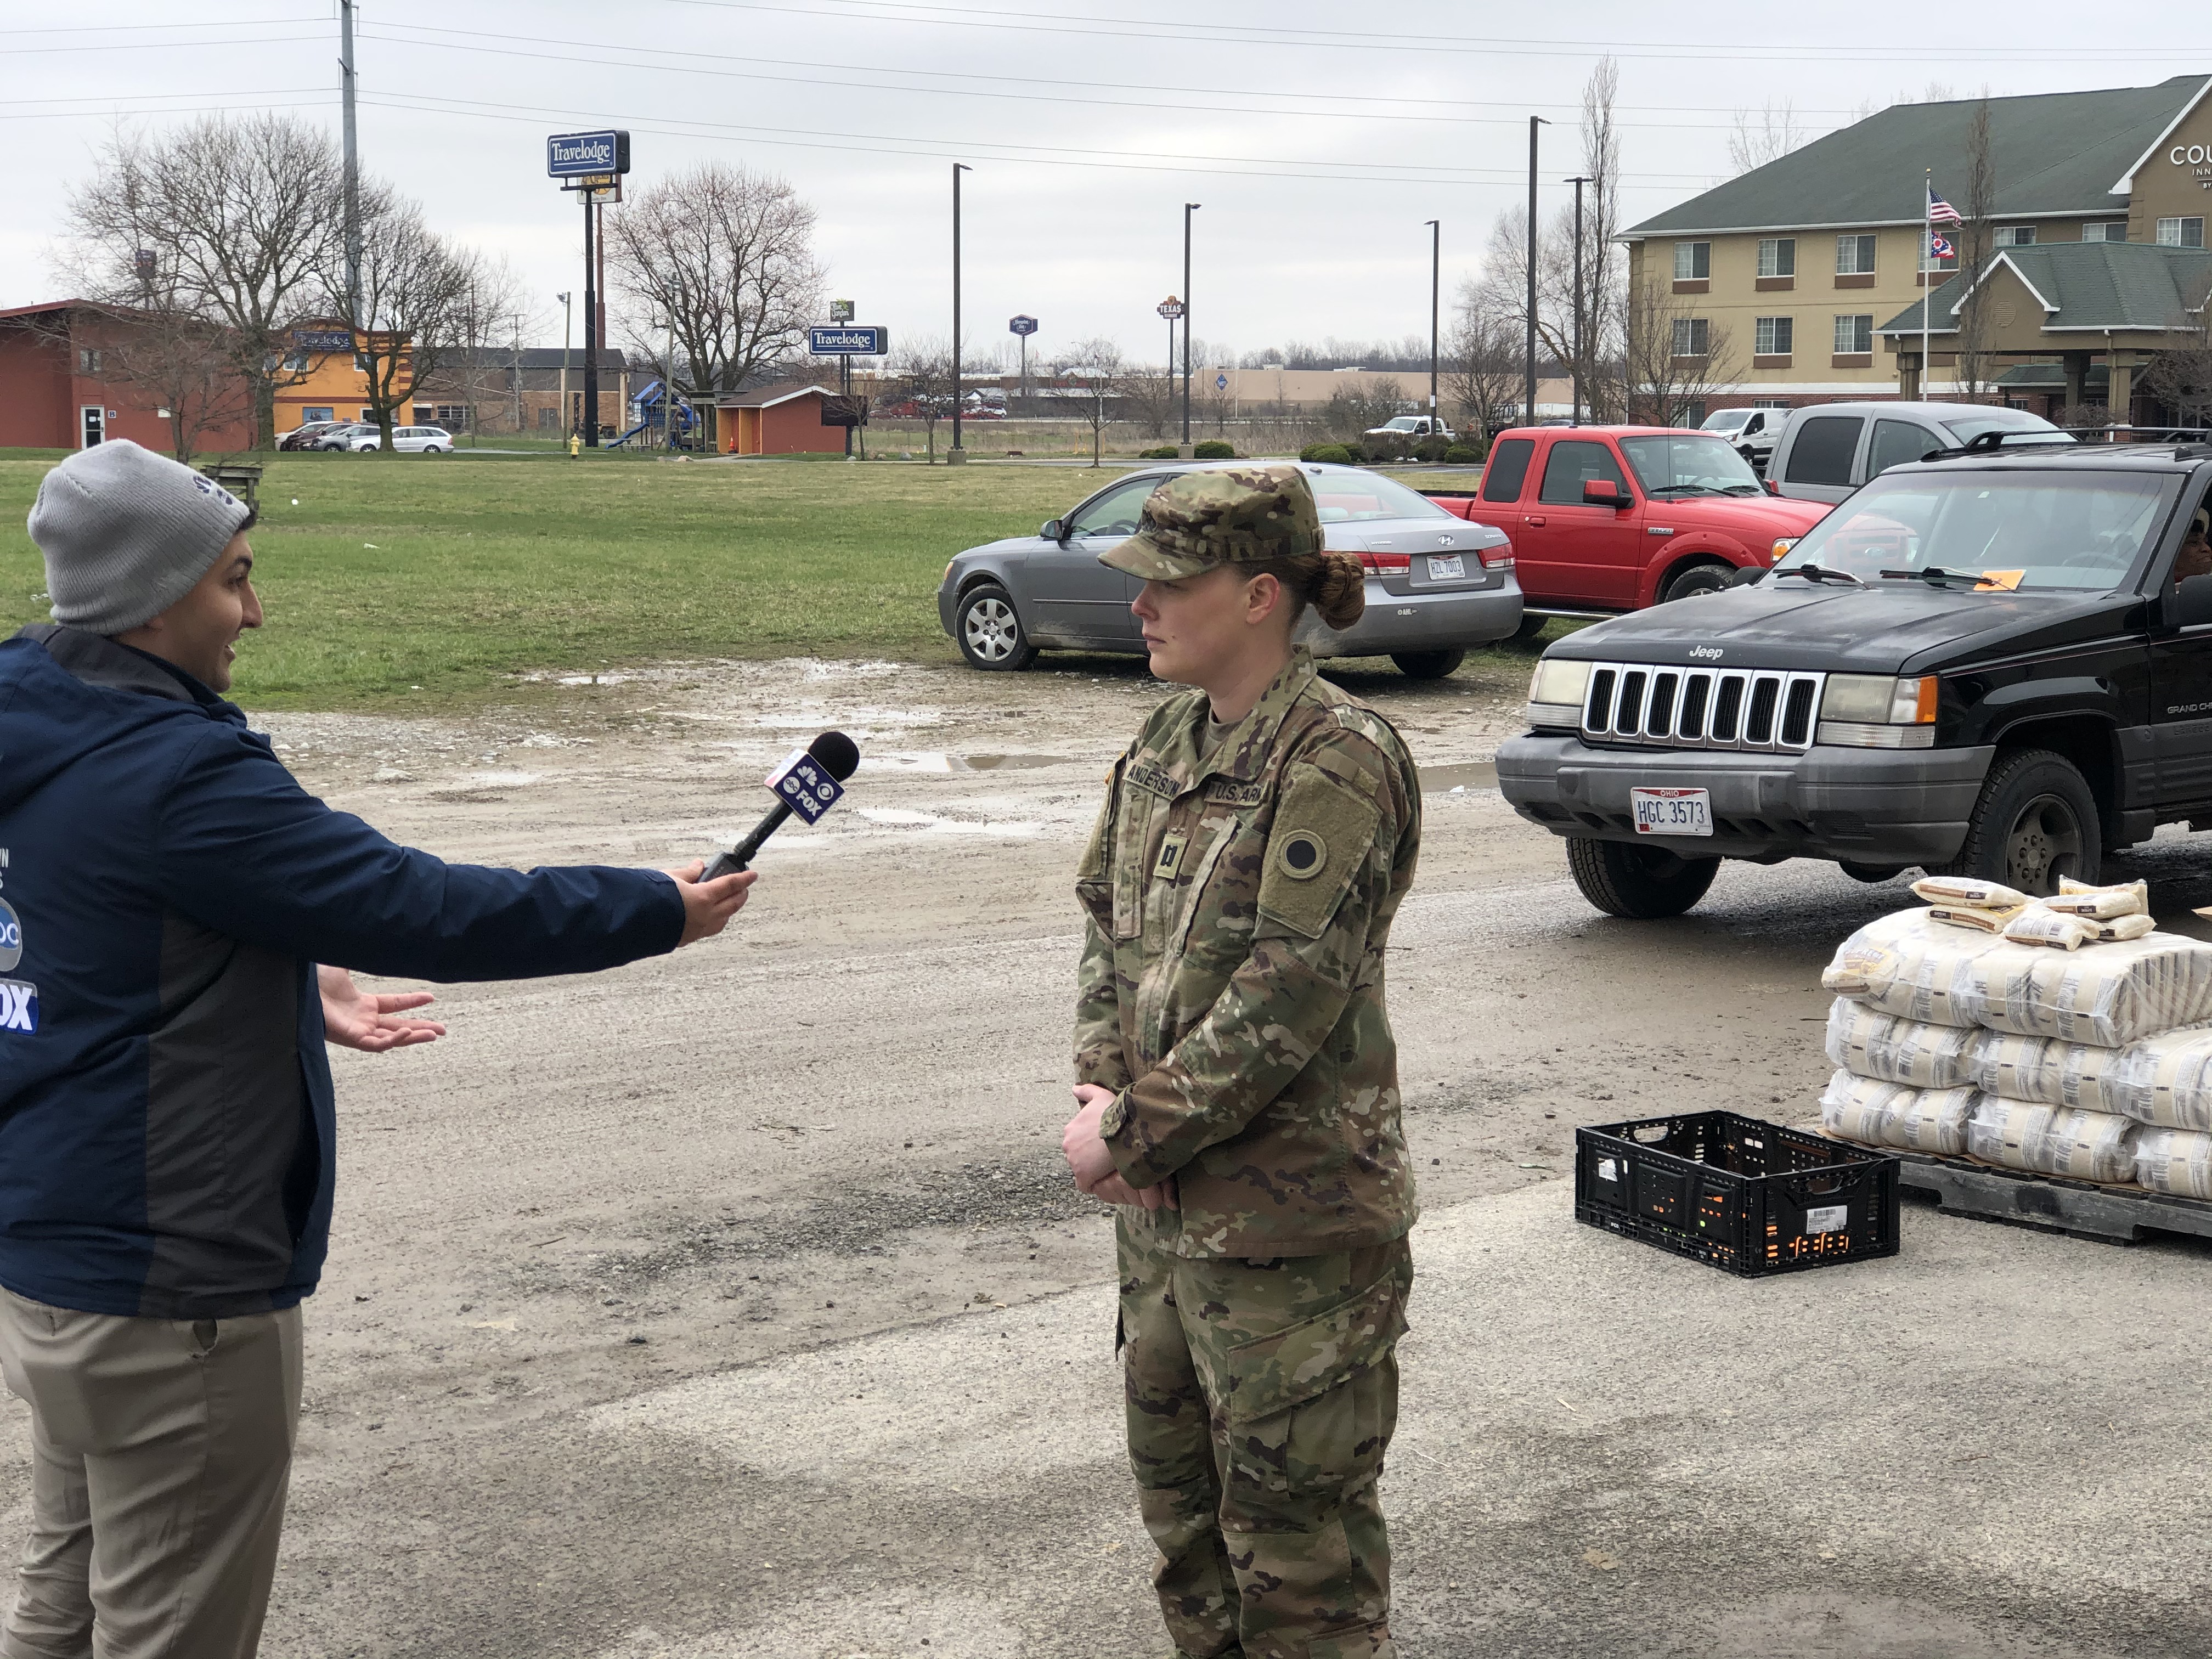 Soldier being interviewed.